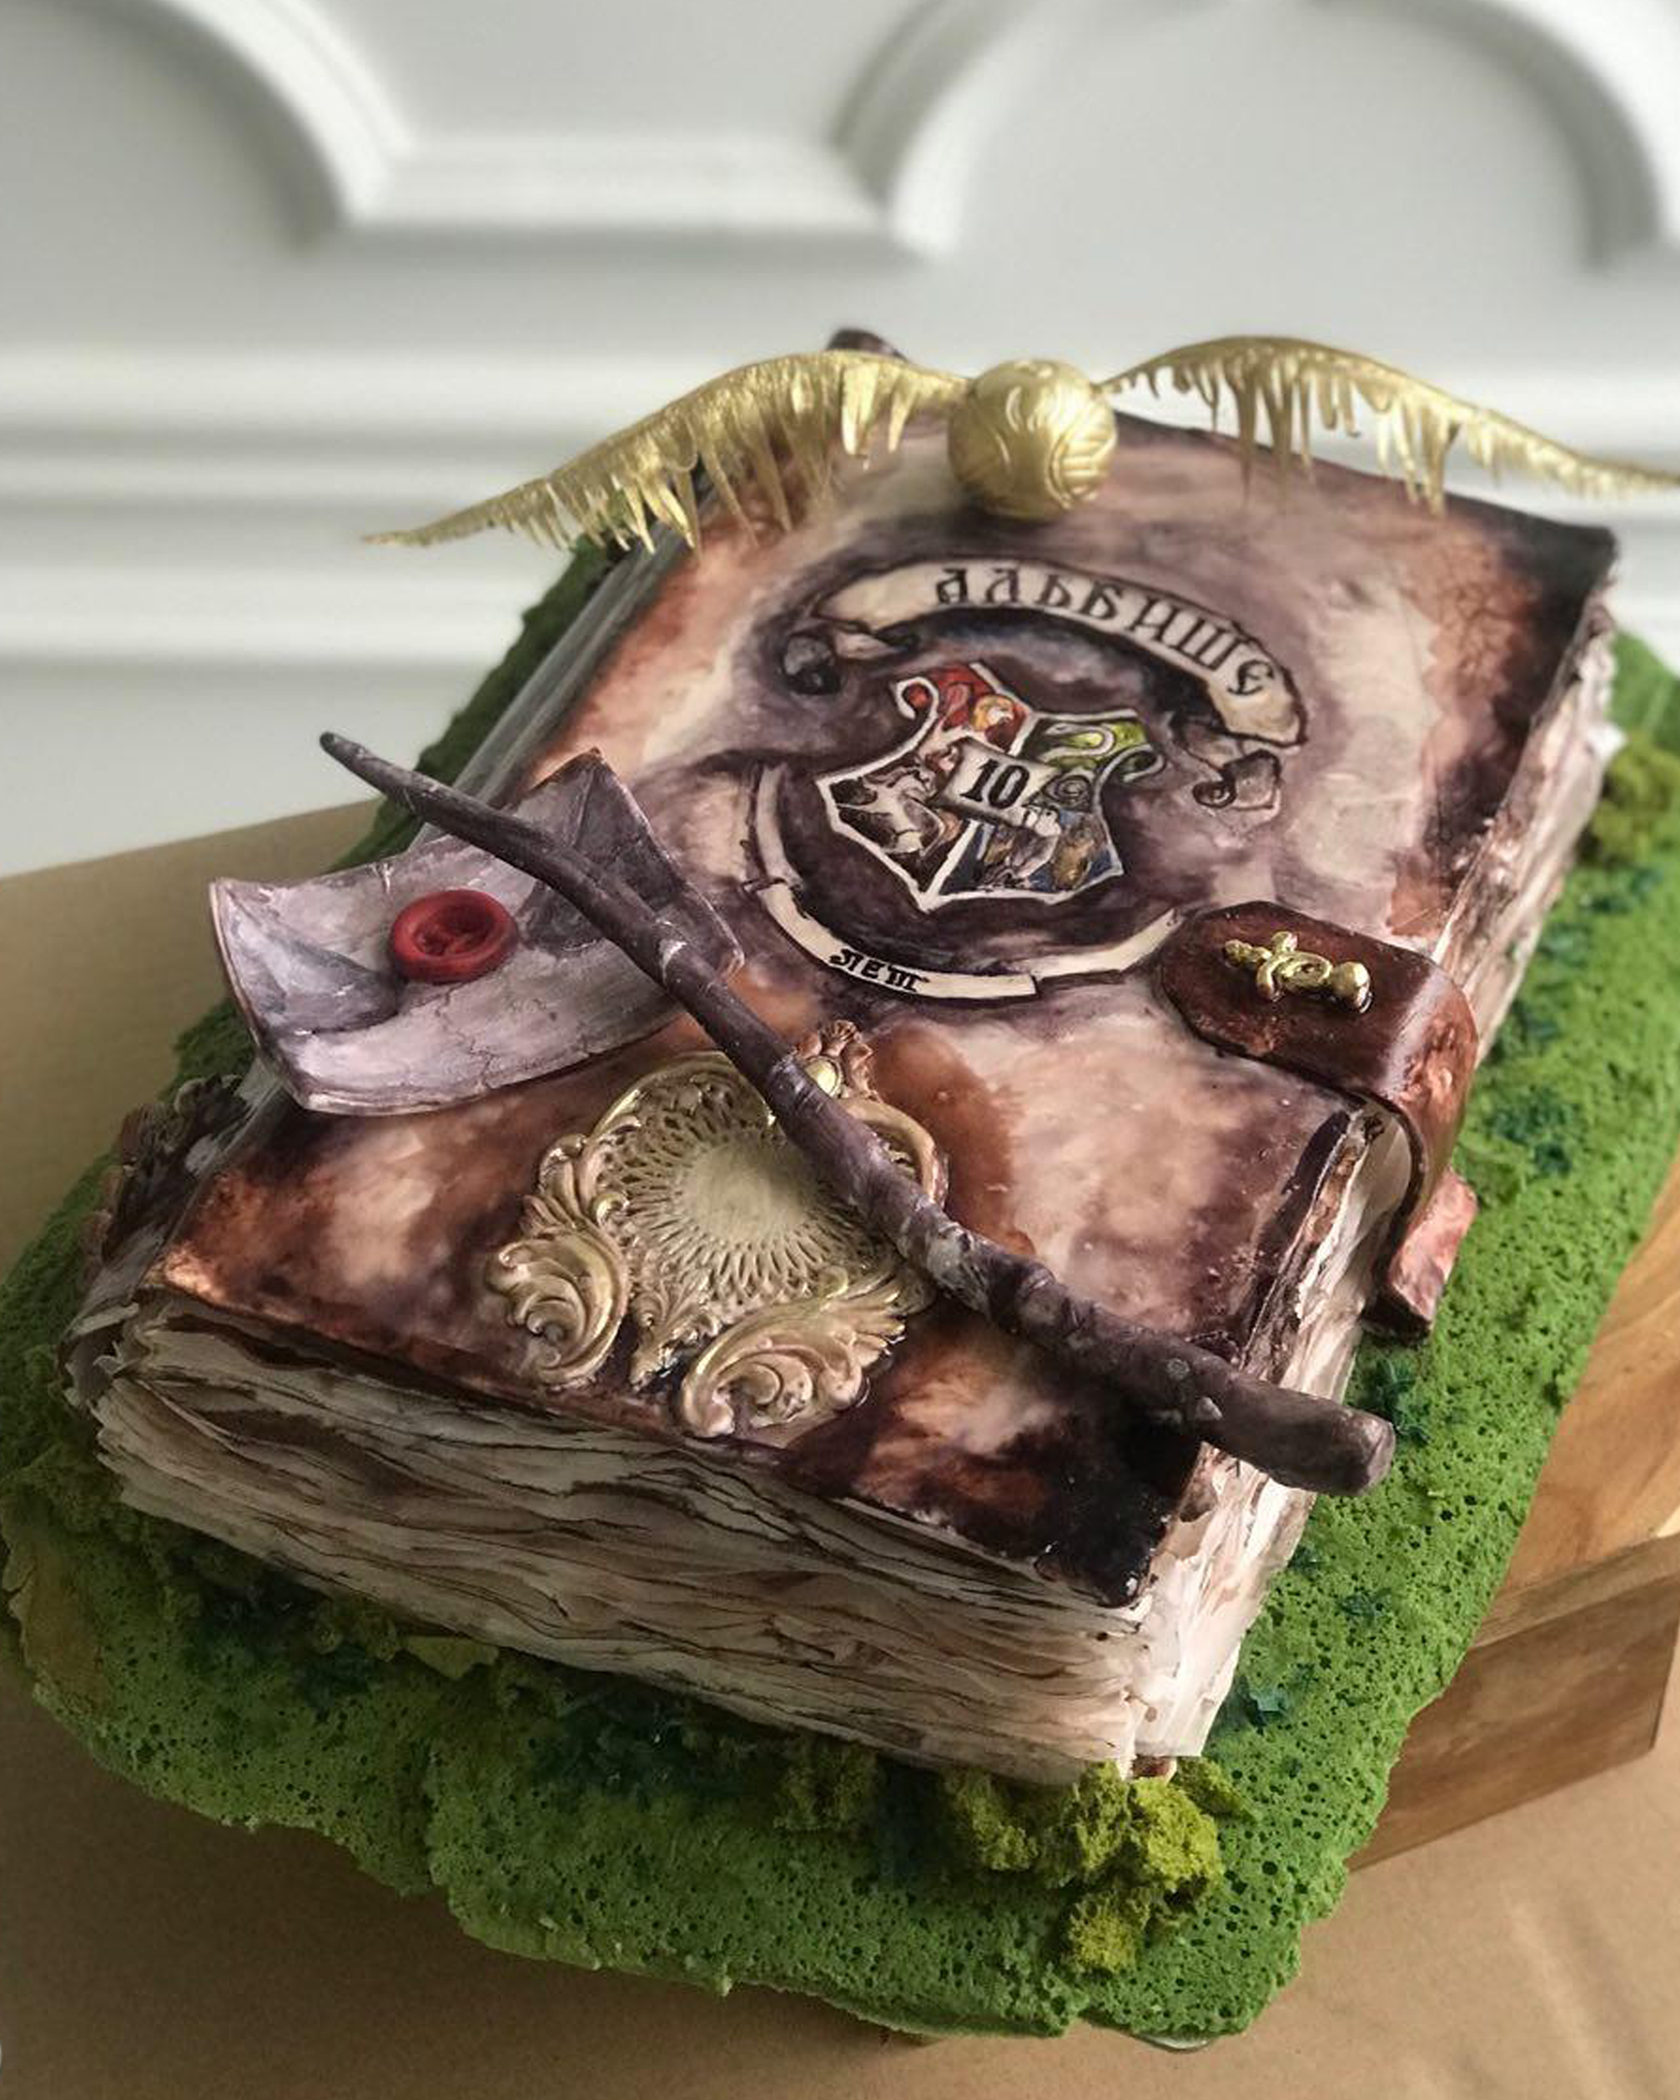 Торт в форме книги